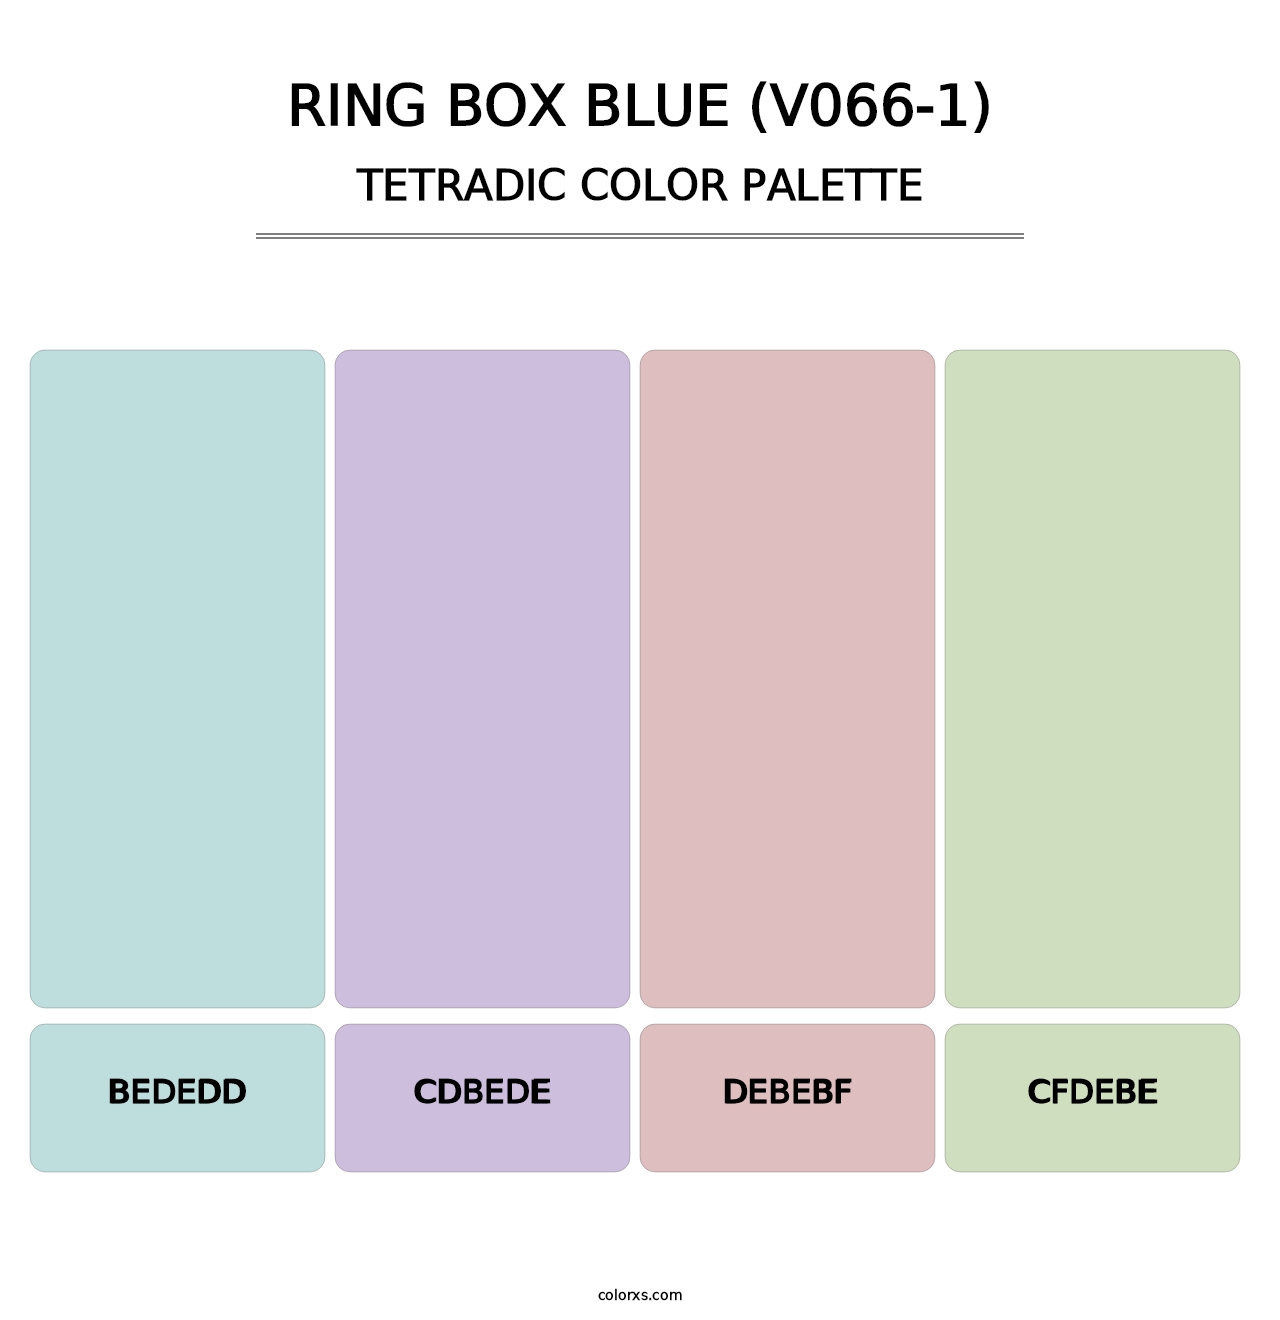 Ring Box Blue (V066-1) - Tetradic Color Palette